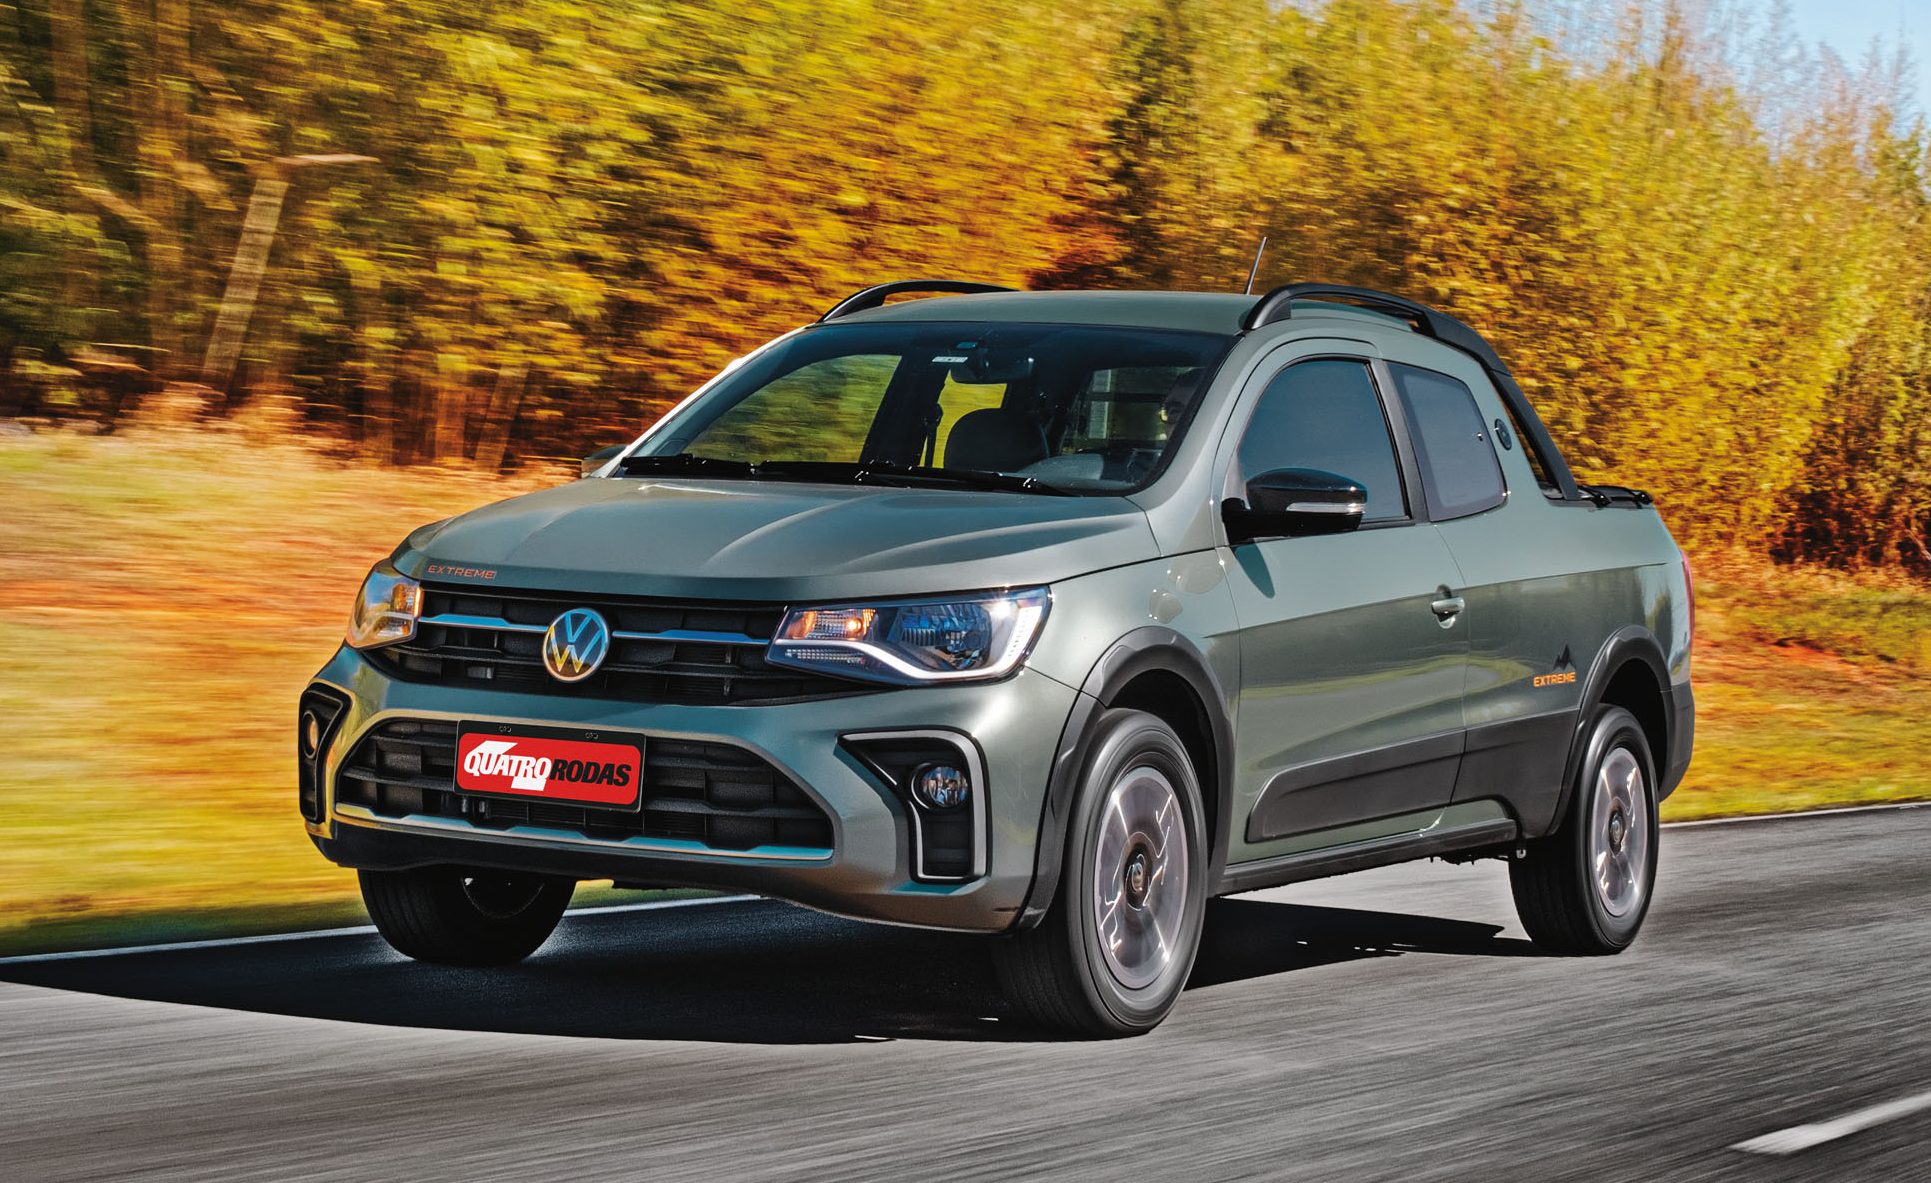 Auto Esporte - Volkswagen Saveiro Cross recebe freios ABS e